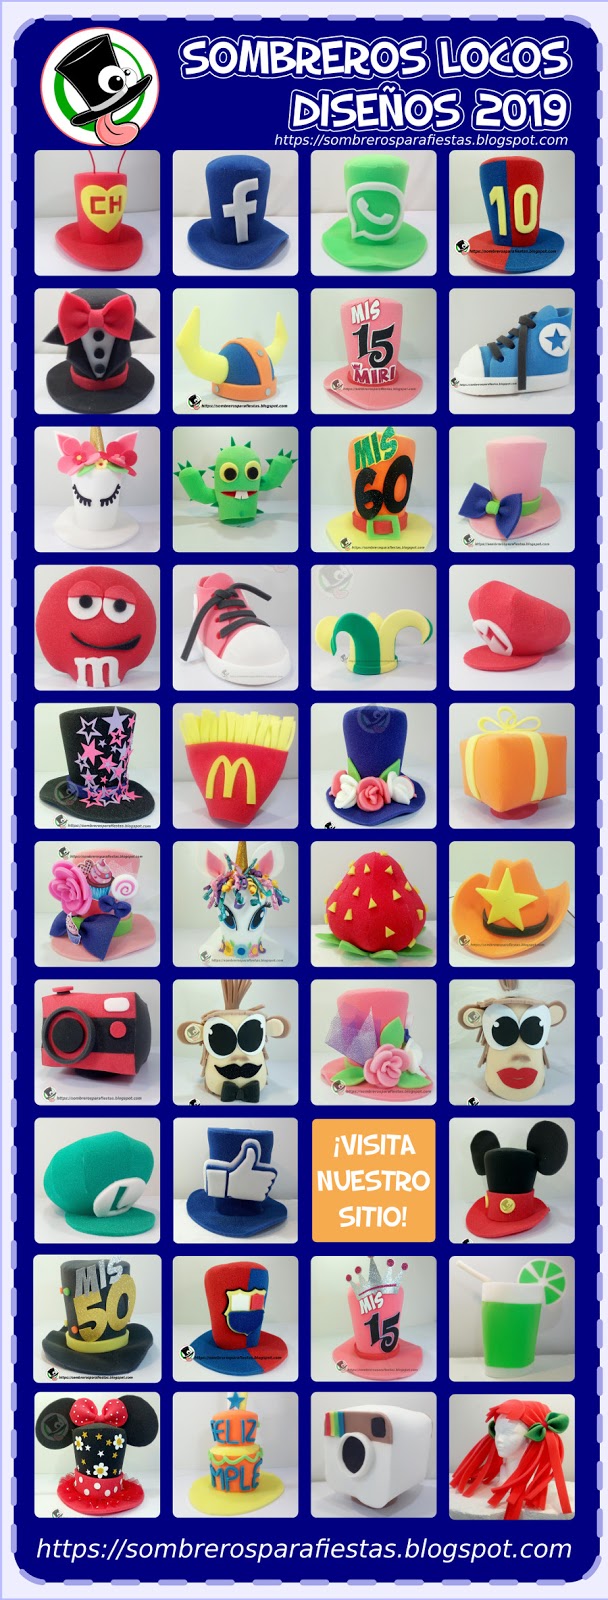 Venta de Sombreros locos en Puebla, Sombreros de espuma para fiestas diseños personalizados: Catálogo de sombreros locos.